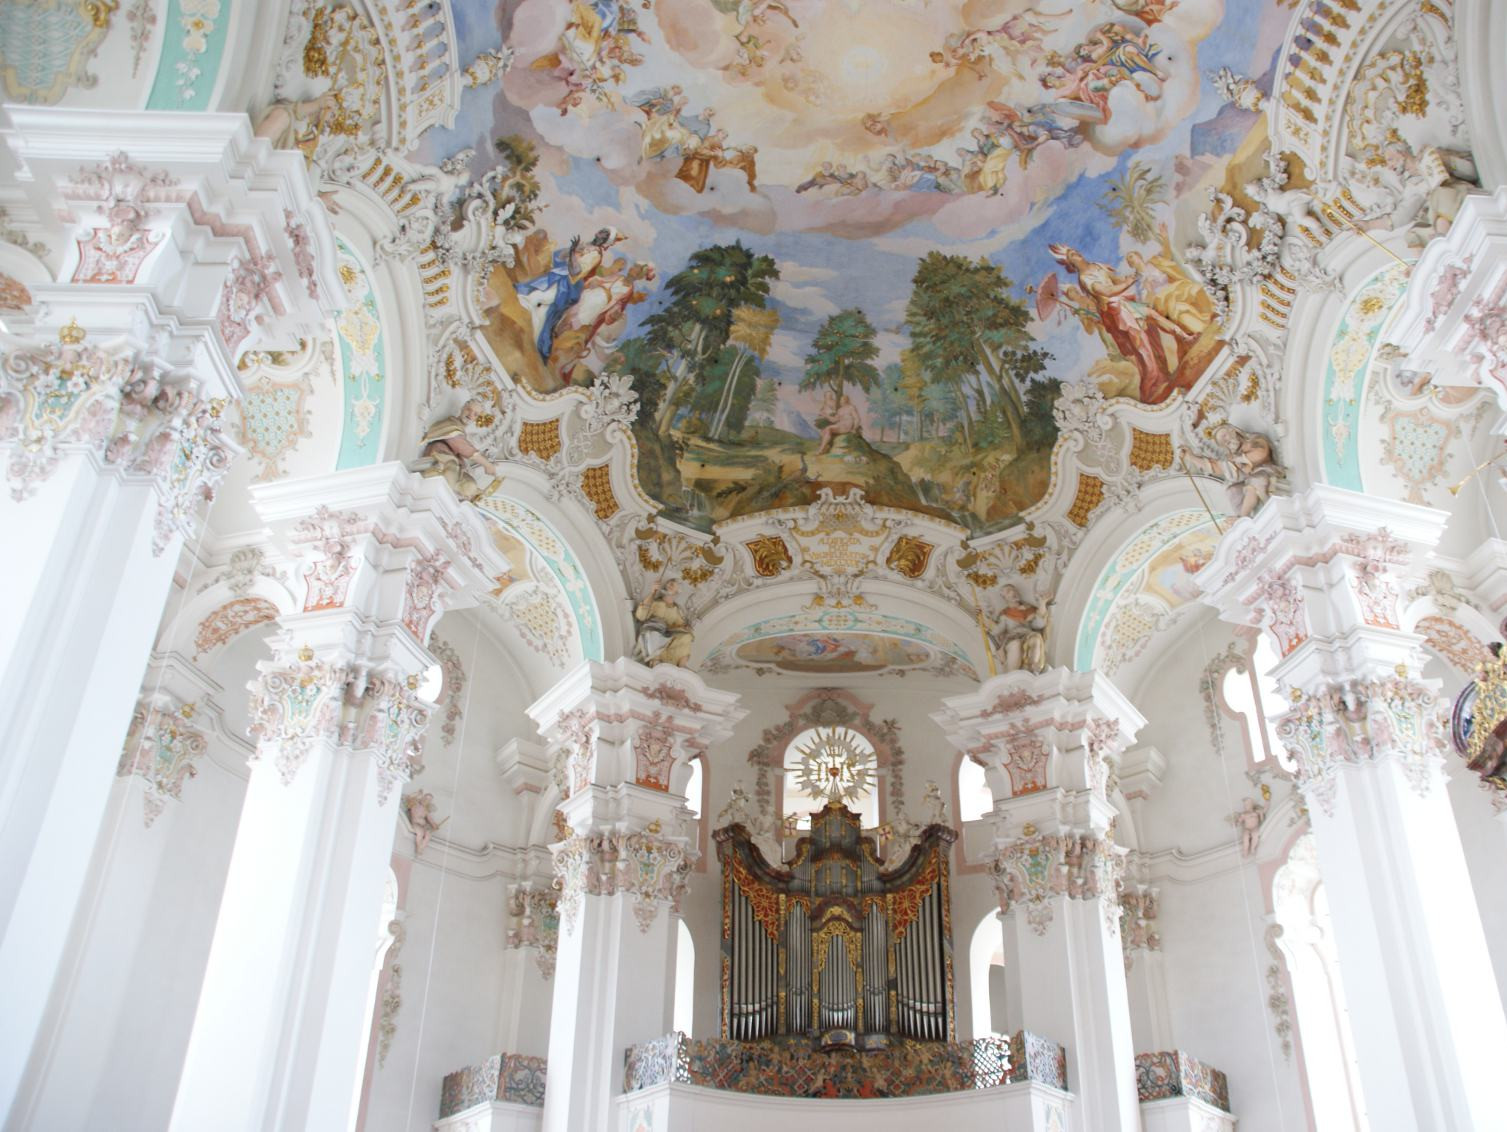 The Baroque gem of Steinhausen